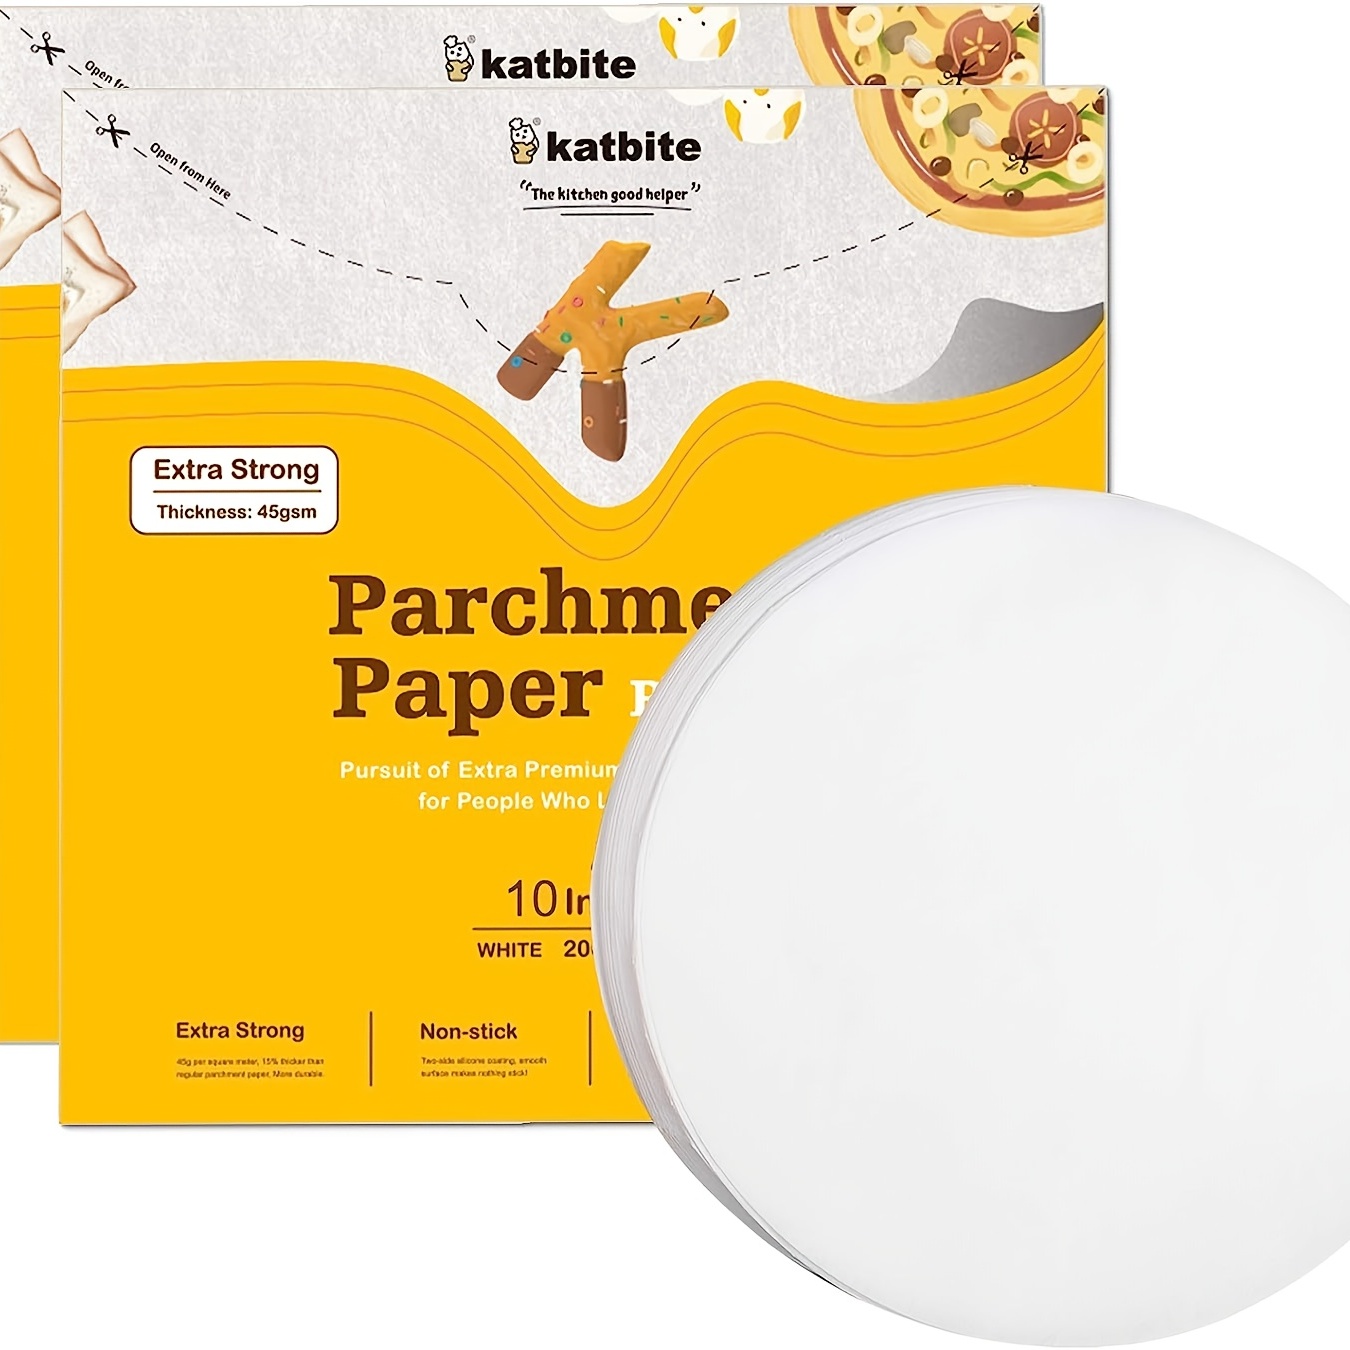 400 Pcs Parchment Paper Baking Sheets, 12X16 Inches Non-Stick Precut Baking